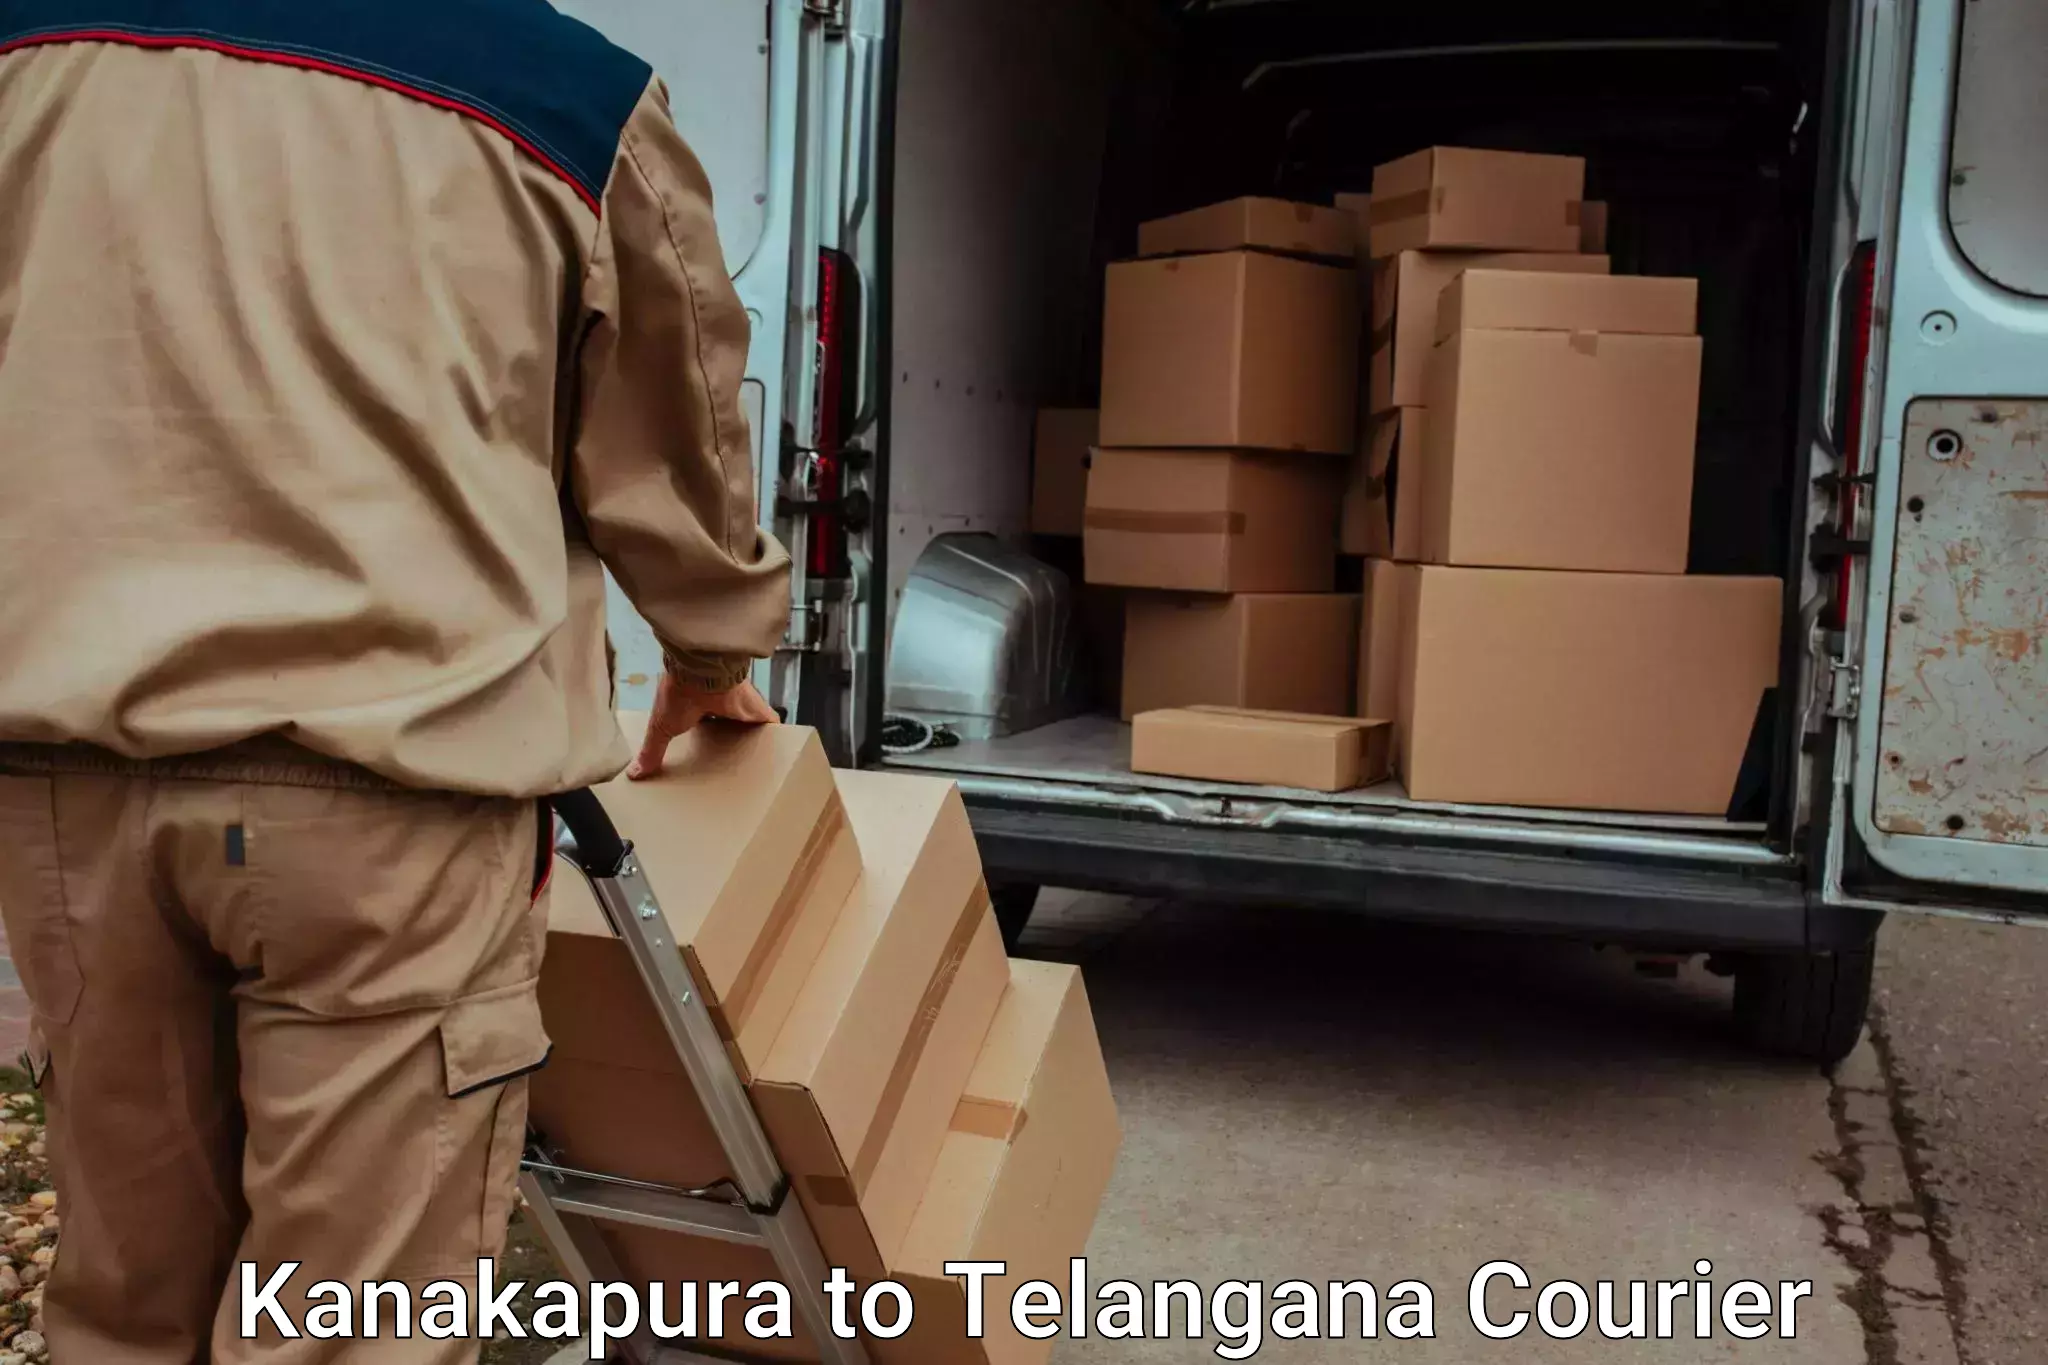 Quick baggage pickup in Kanakapura to Bhuvanagiri